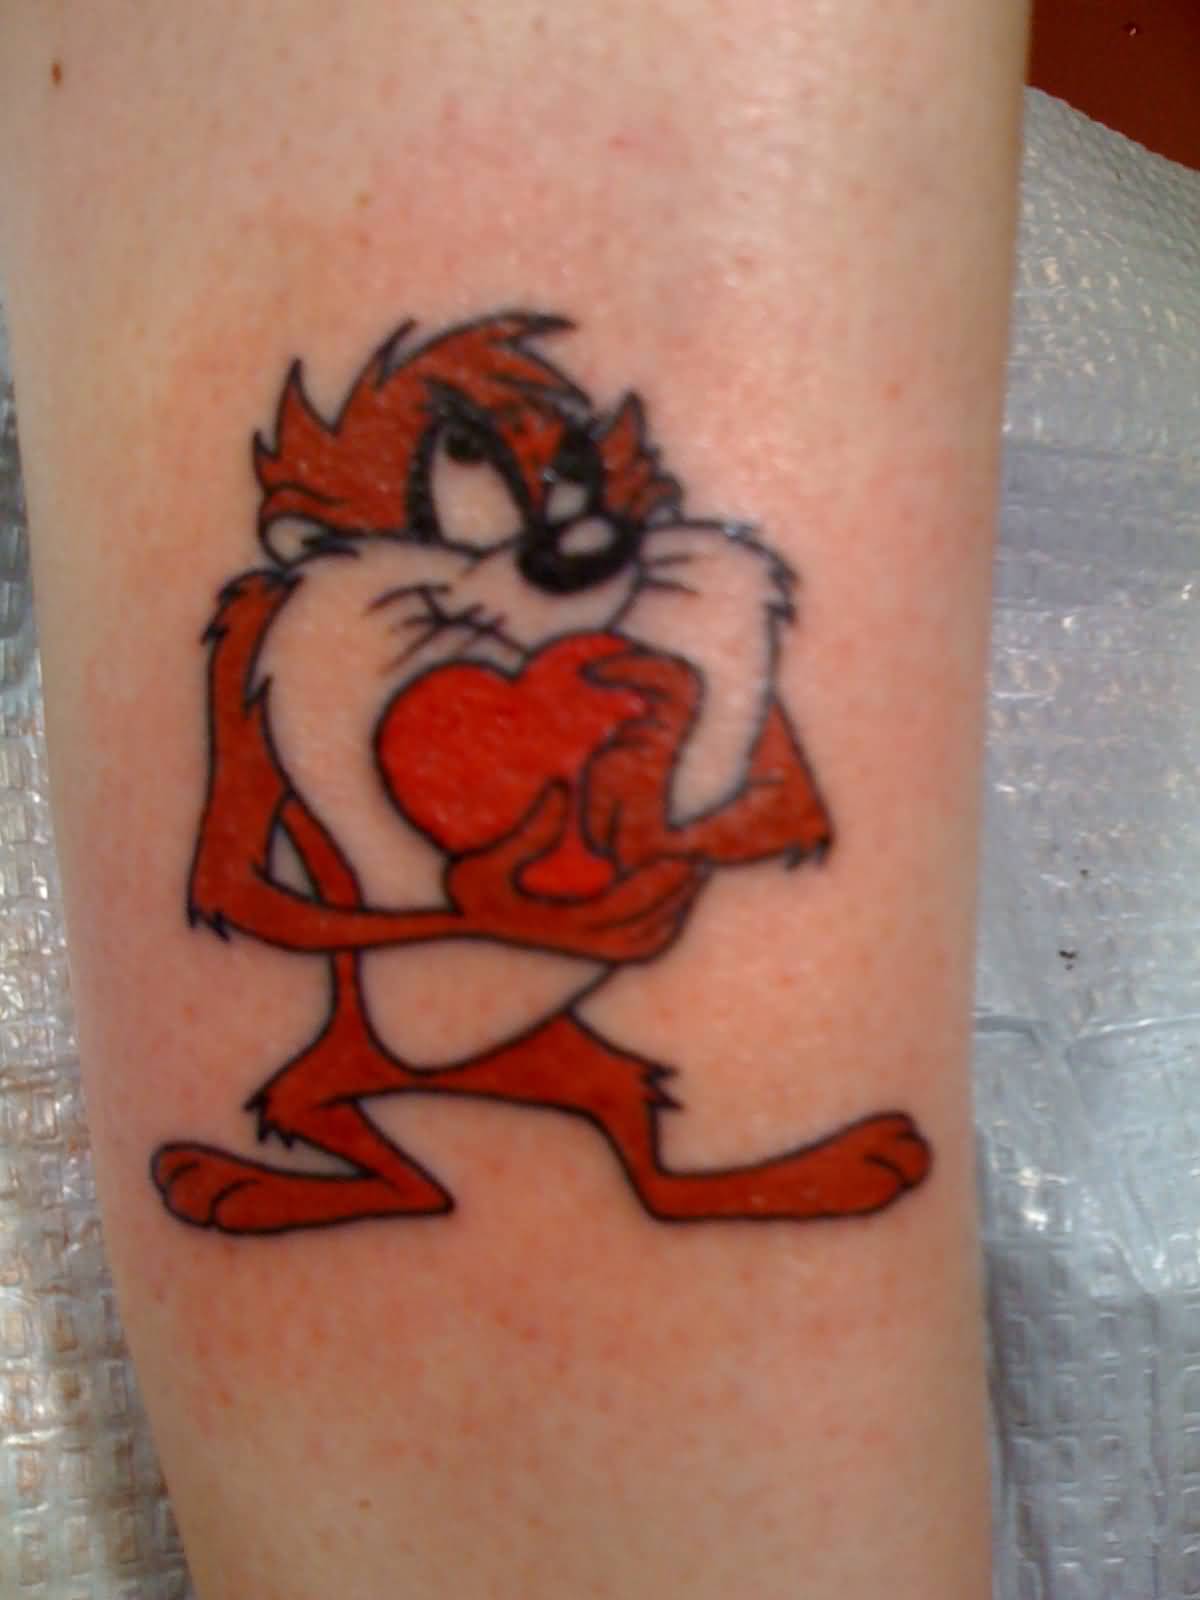 Tasmanian Devil With Heart Tattoo